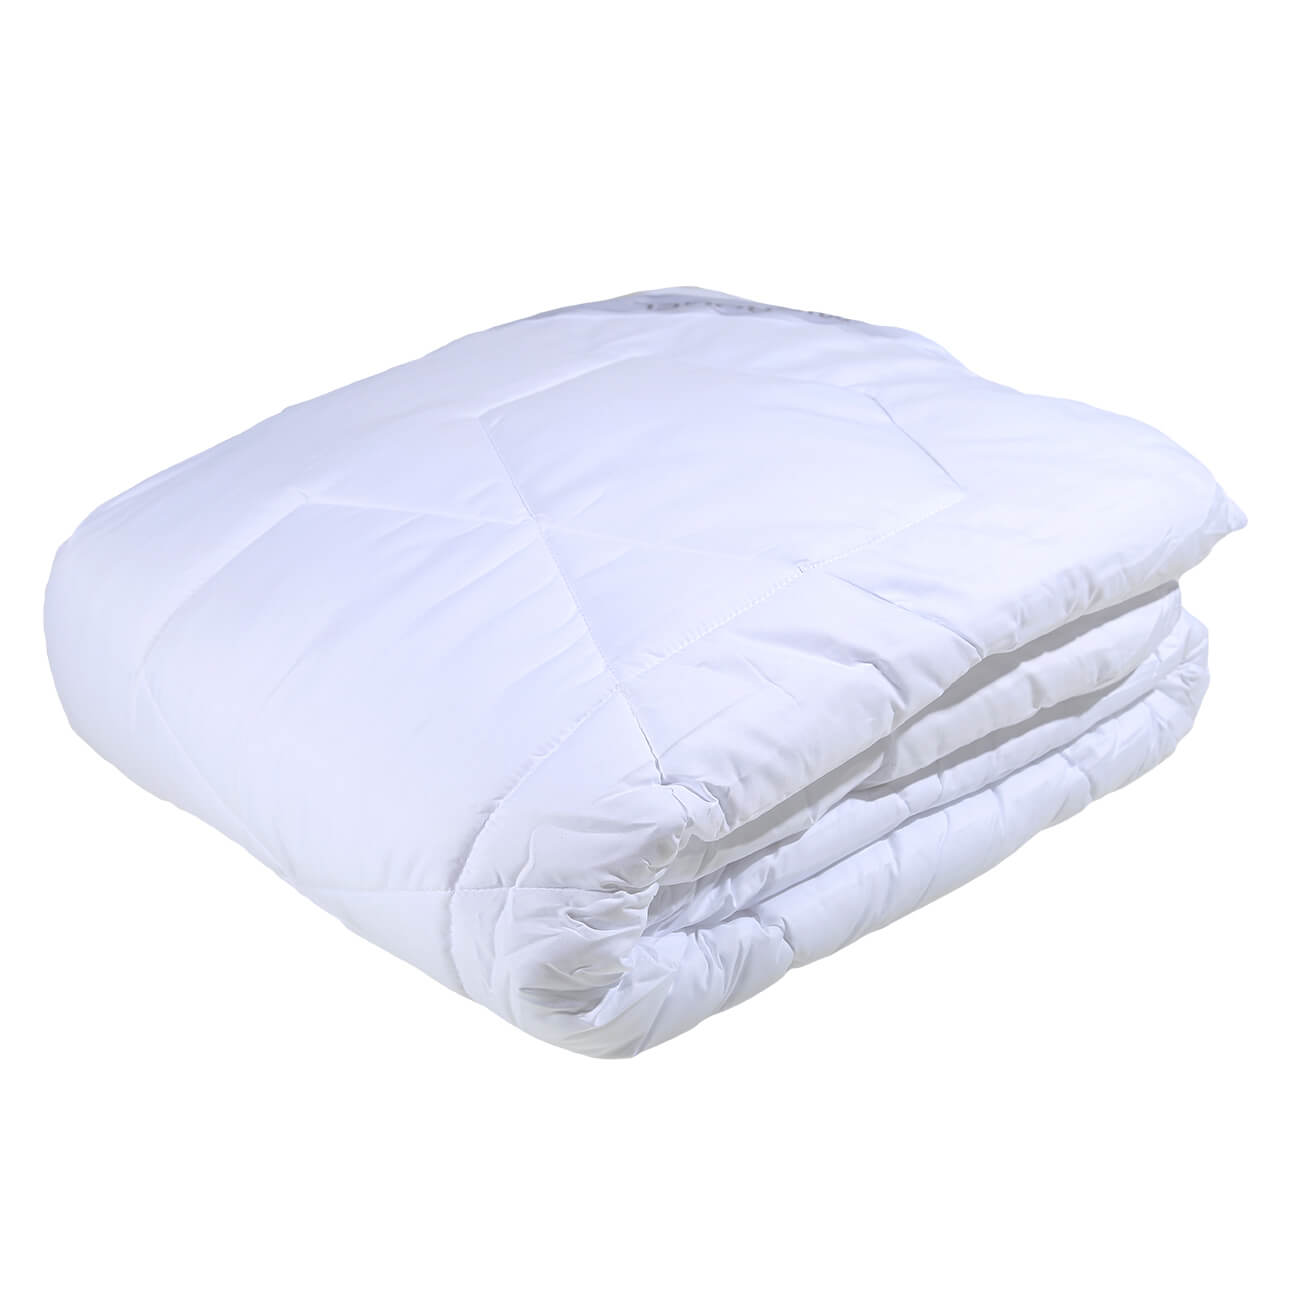 Одеяло, 200x220 cм, микрофибра/микрогель, Microgel одеяло 140х200 см микрофибра микрогель microgel